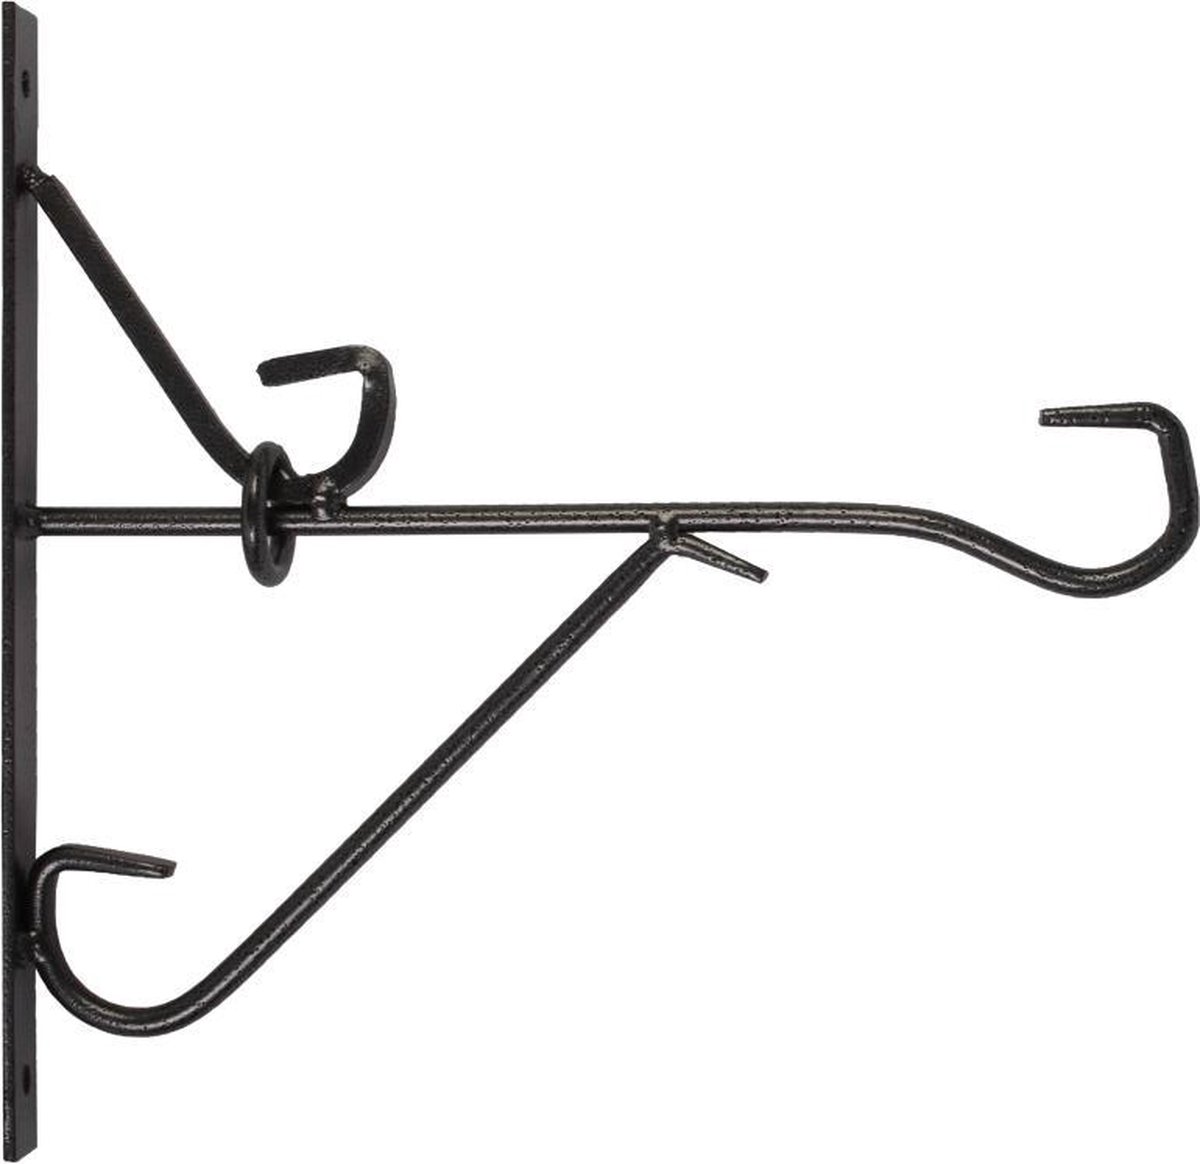 Talen Tools - Muurhaak - Smeedijzer - Zwart - 25 cm - Talen Tools